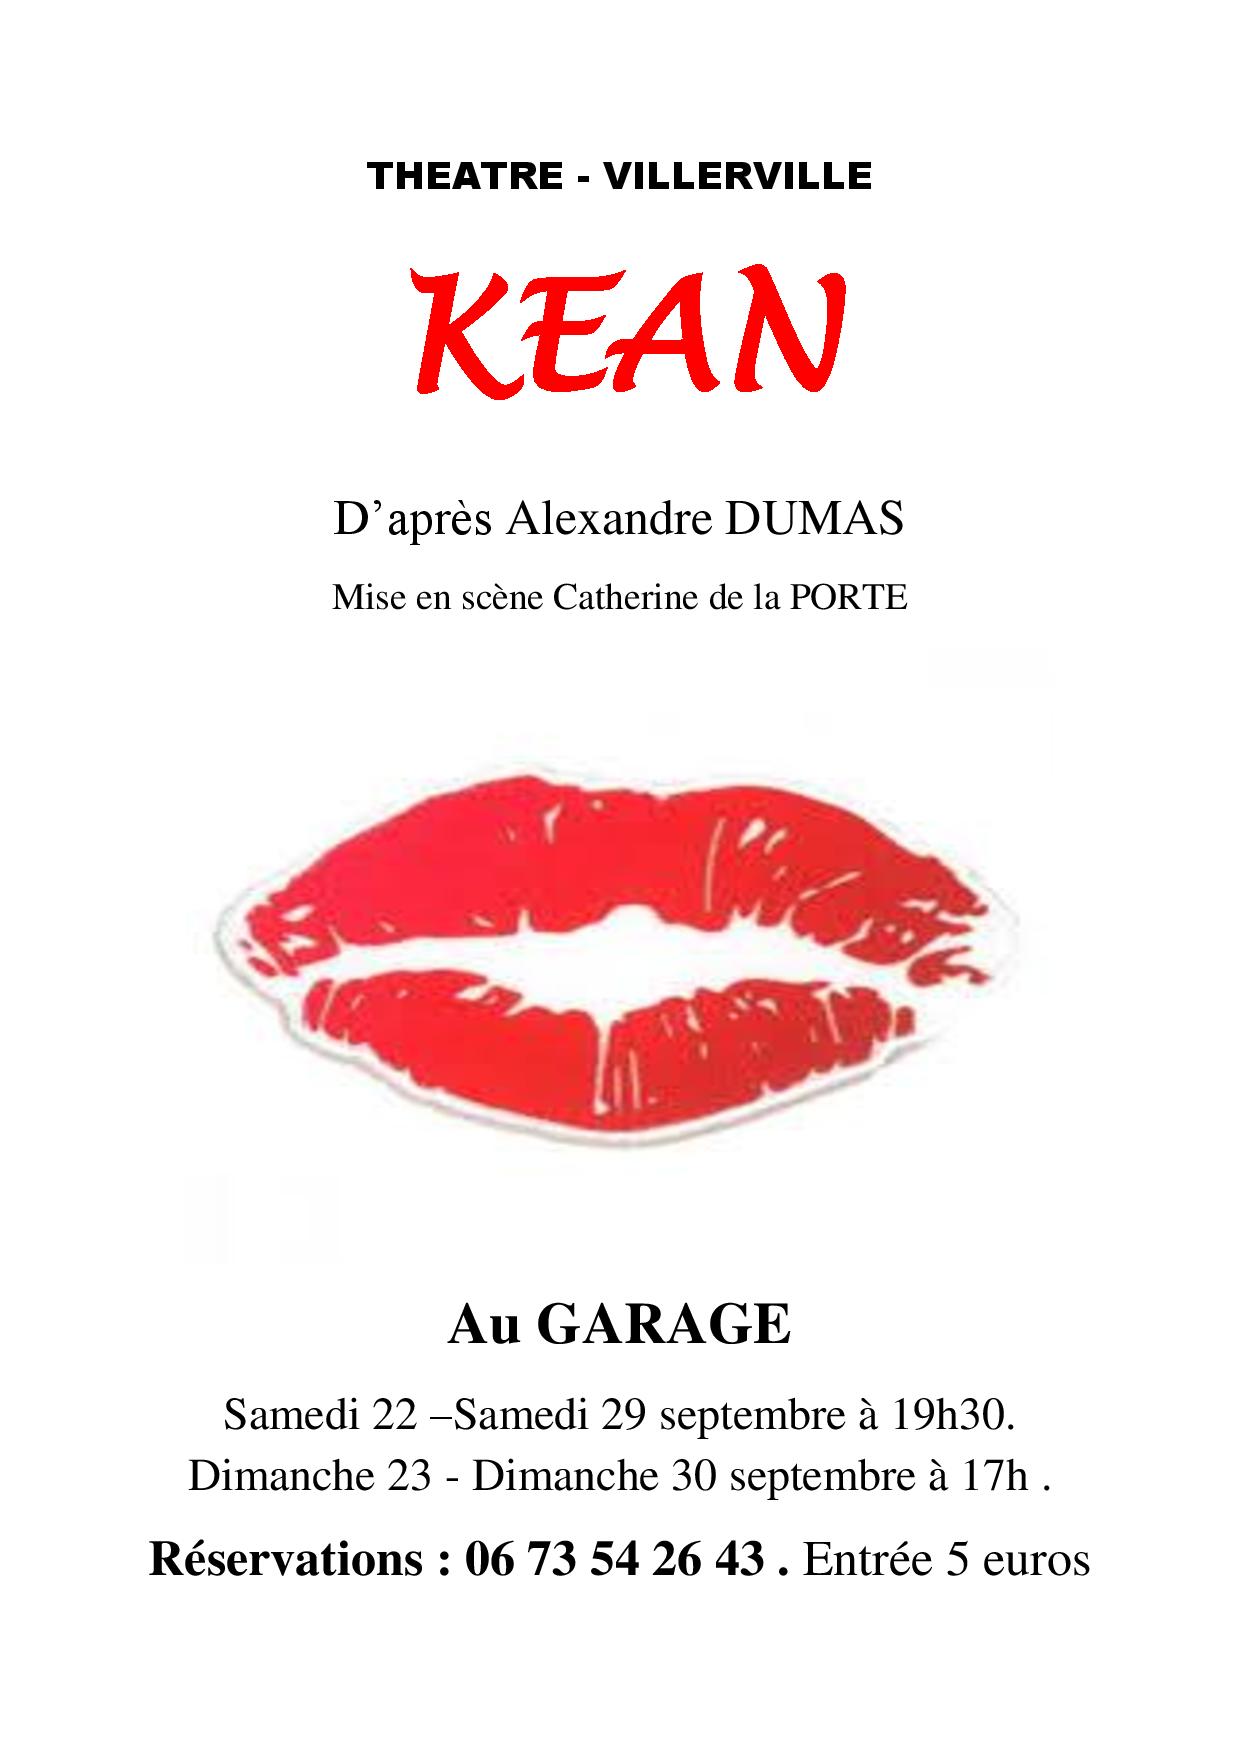 Affiche kean doc 3doc page 001